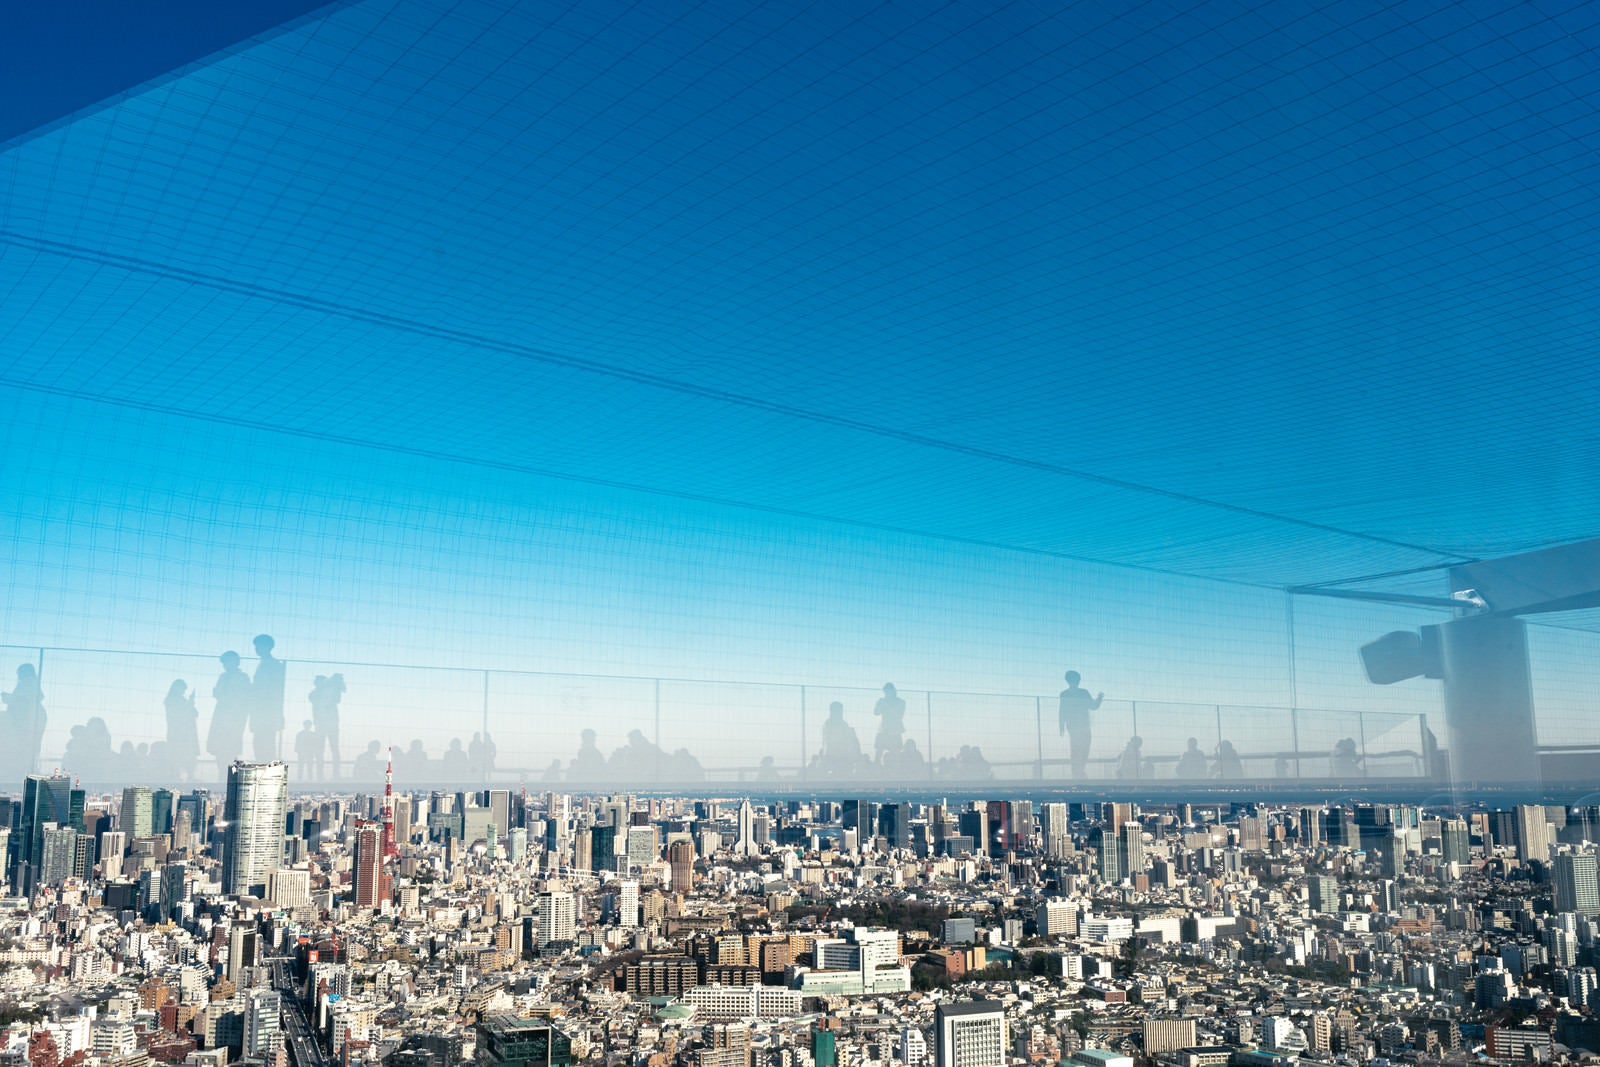 「展望施設「渋谷スカイ」から東京タワー方面の眺めと反射するフロア」の写真